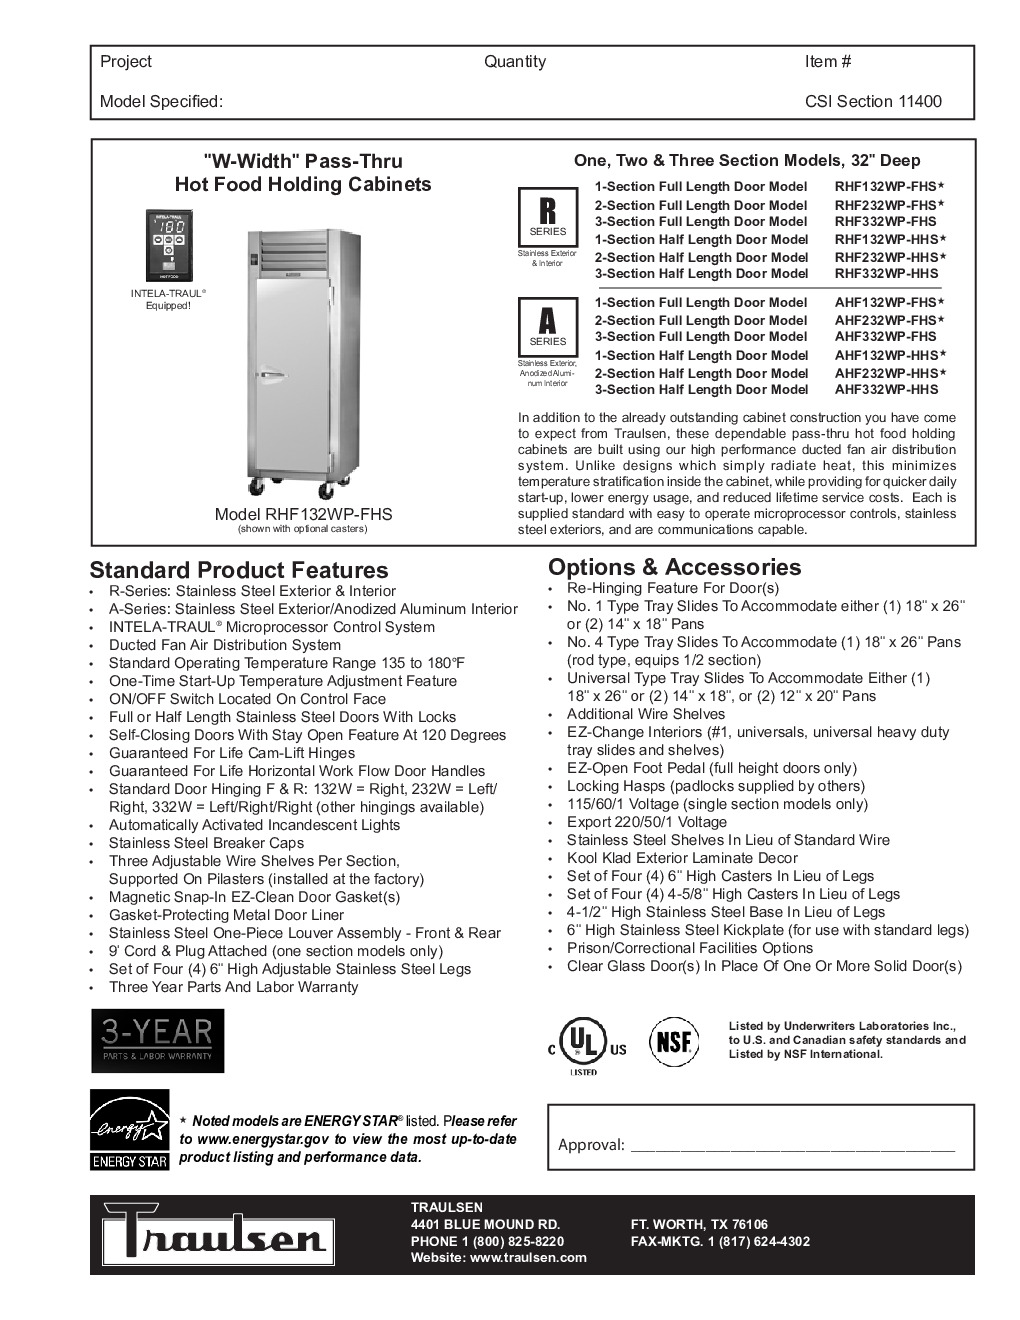 Traulsen RHF232WP-FHG Pass-Thru Heated Cabinet